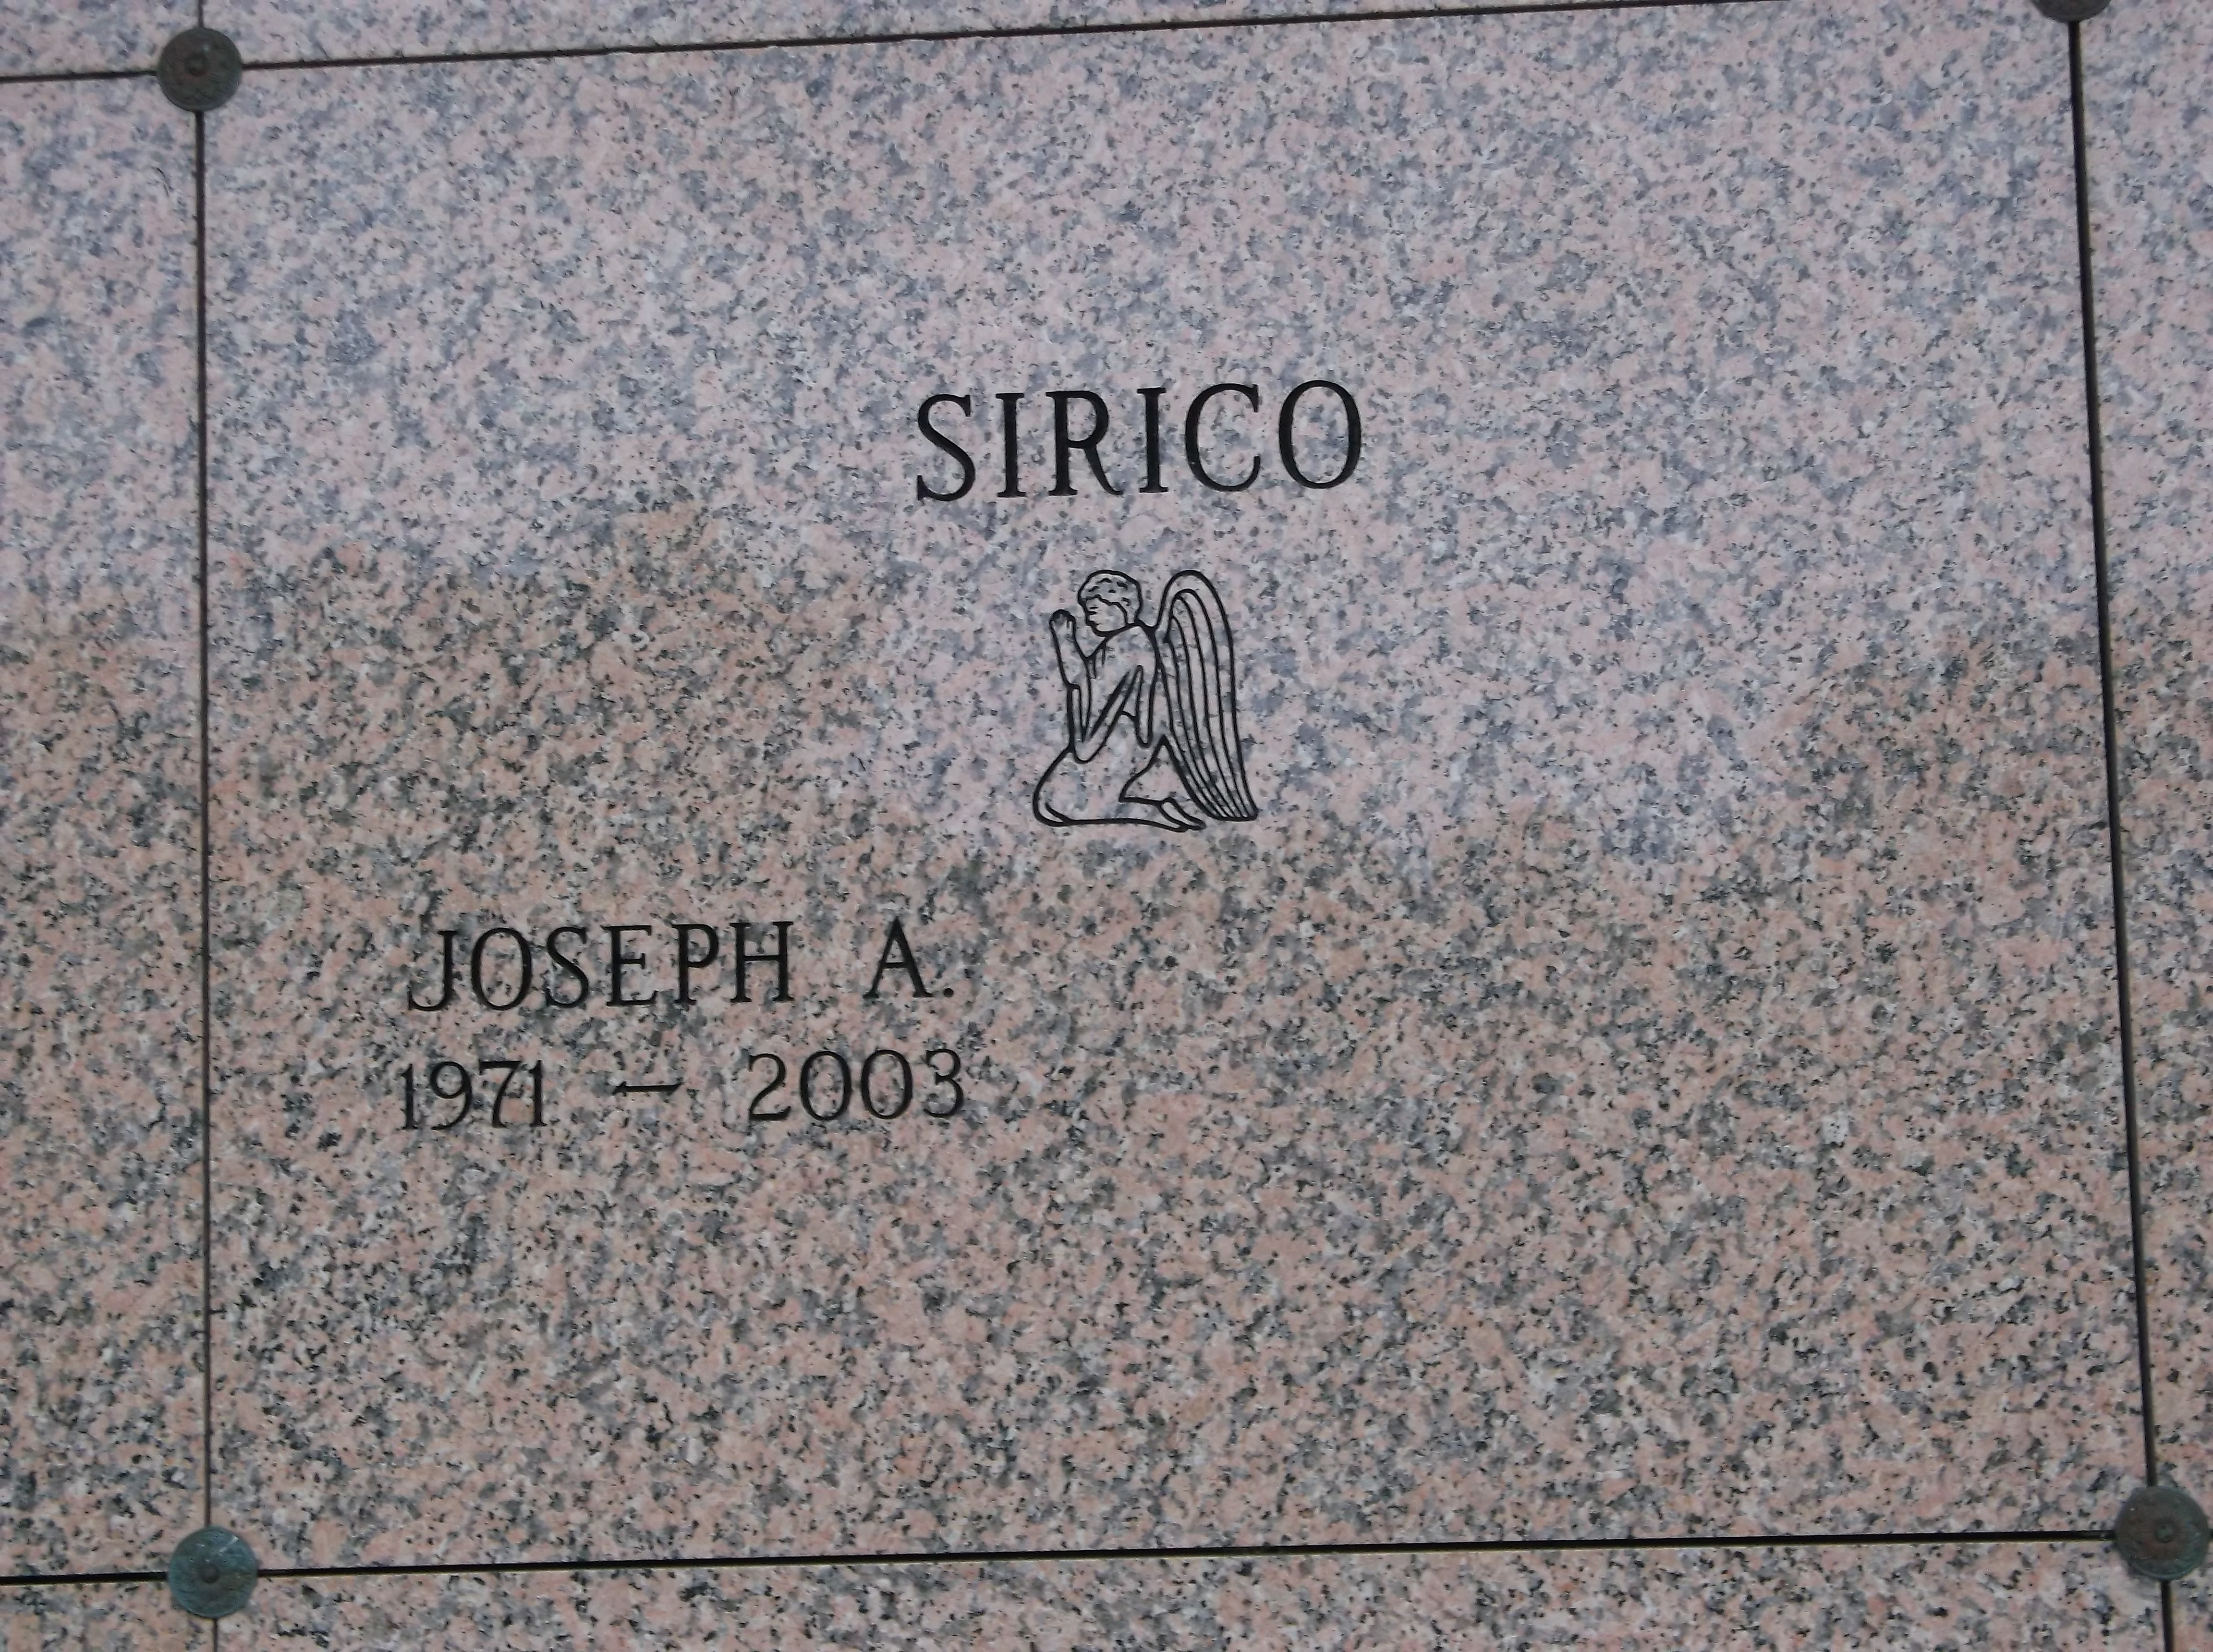 Joseph A Sirico